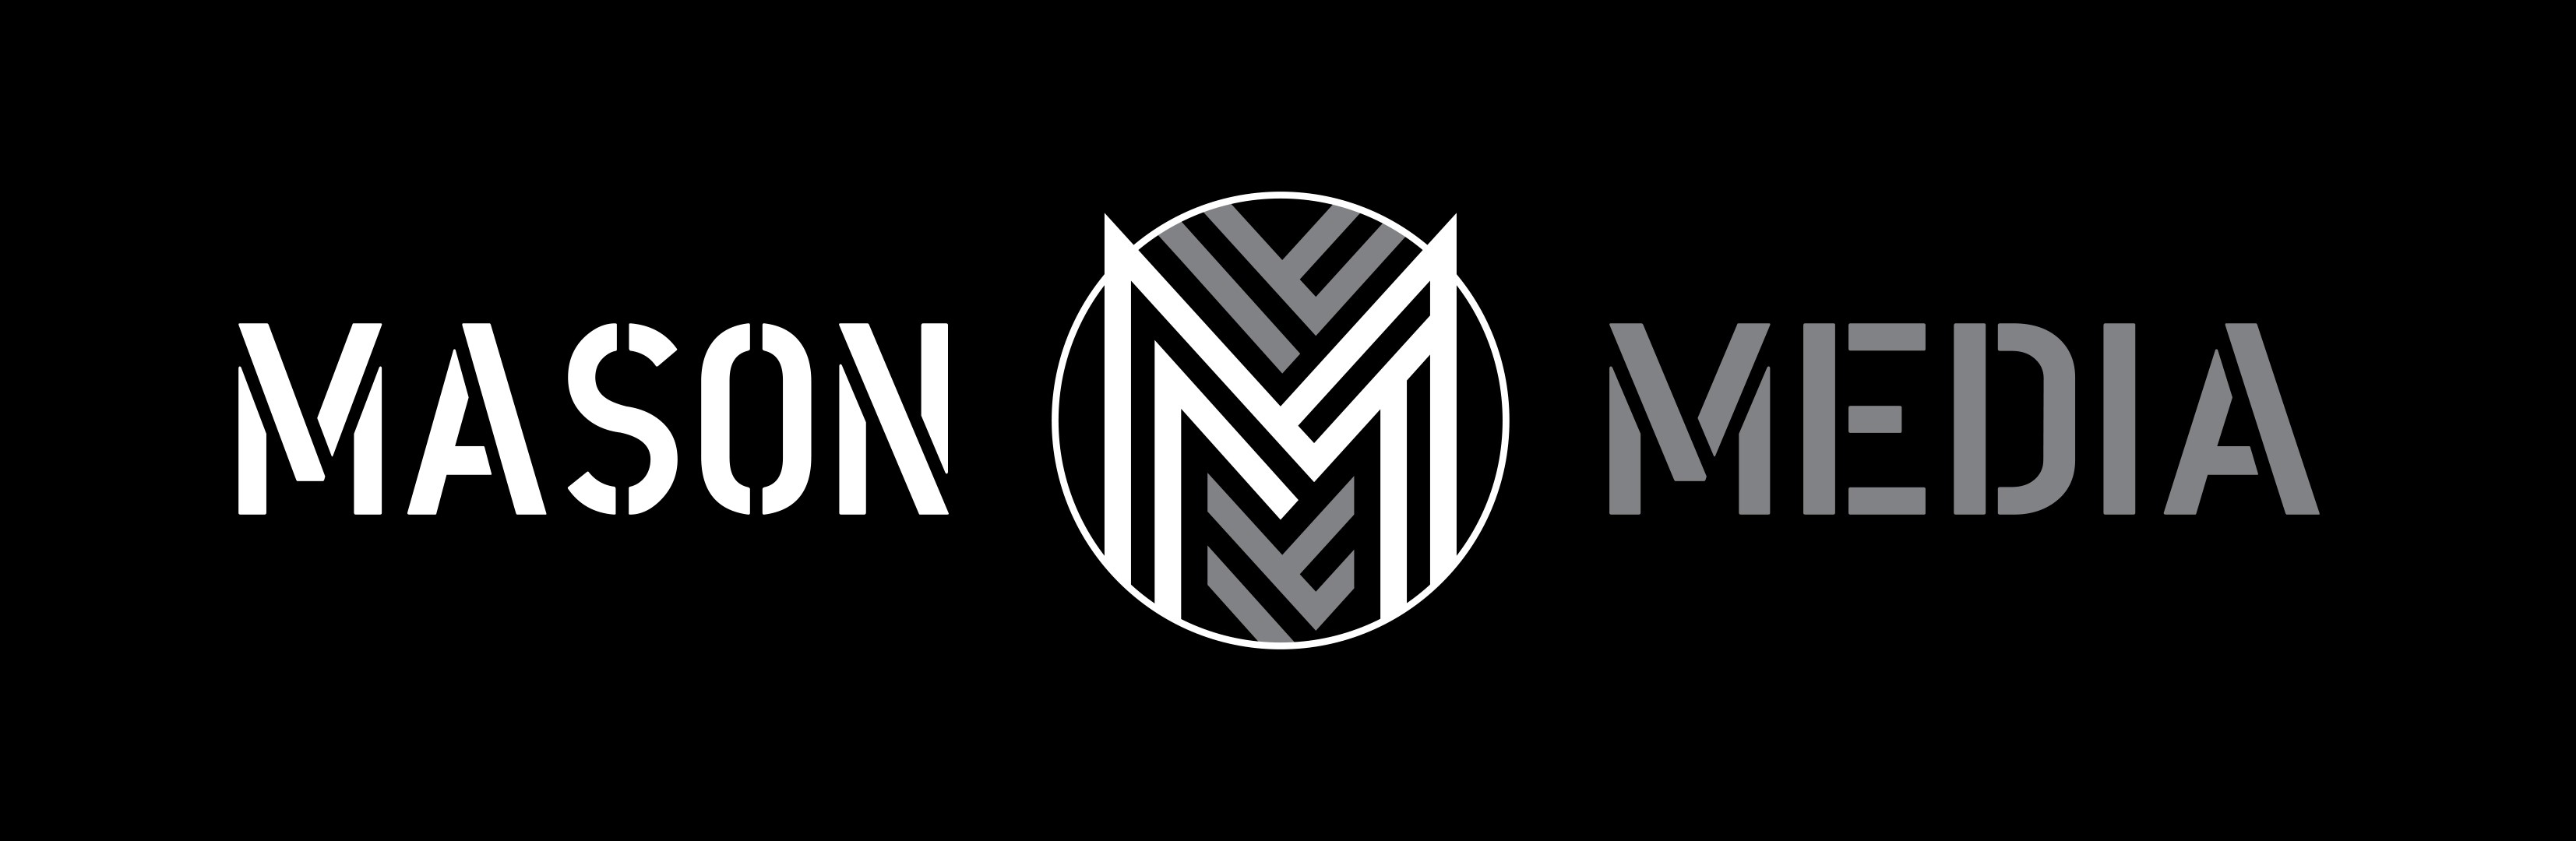 Mason Media logo